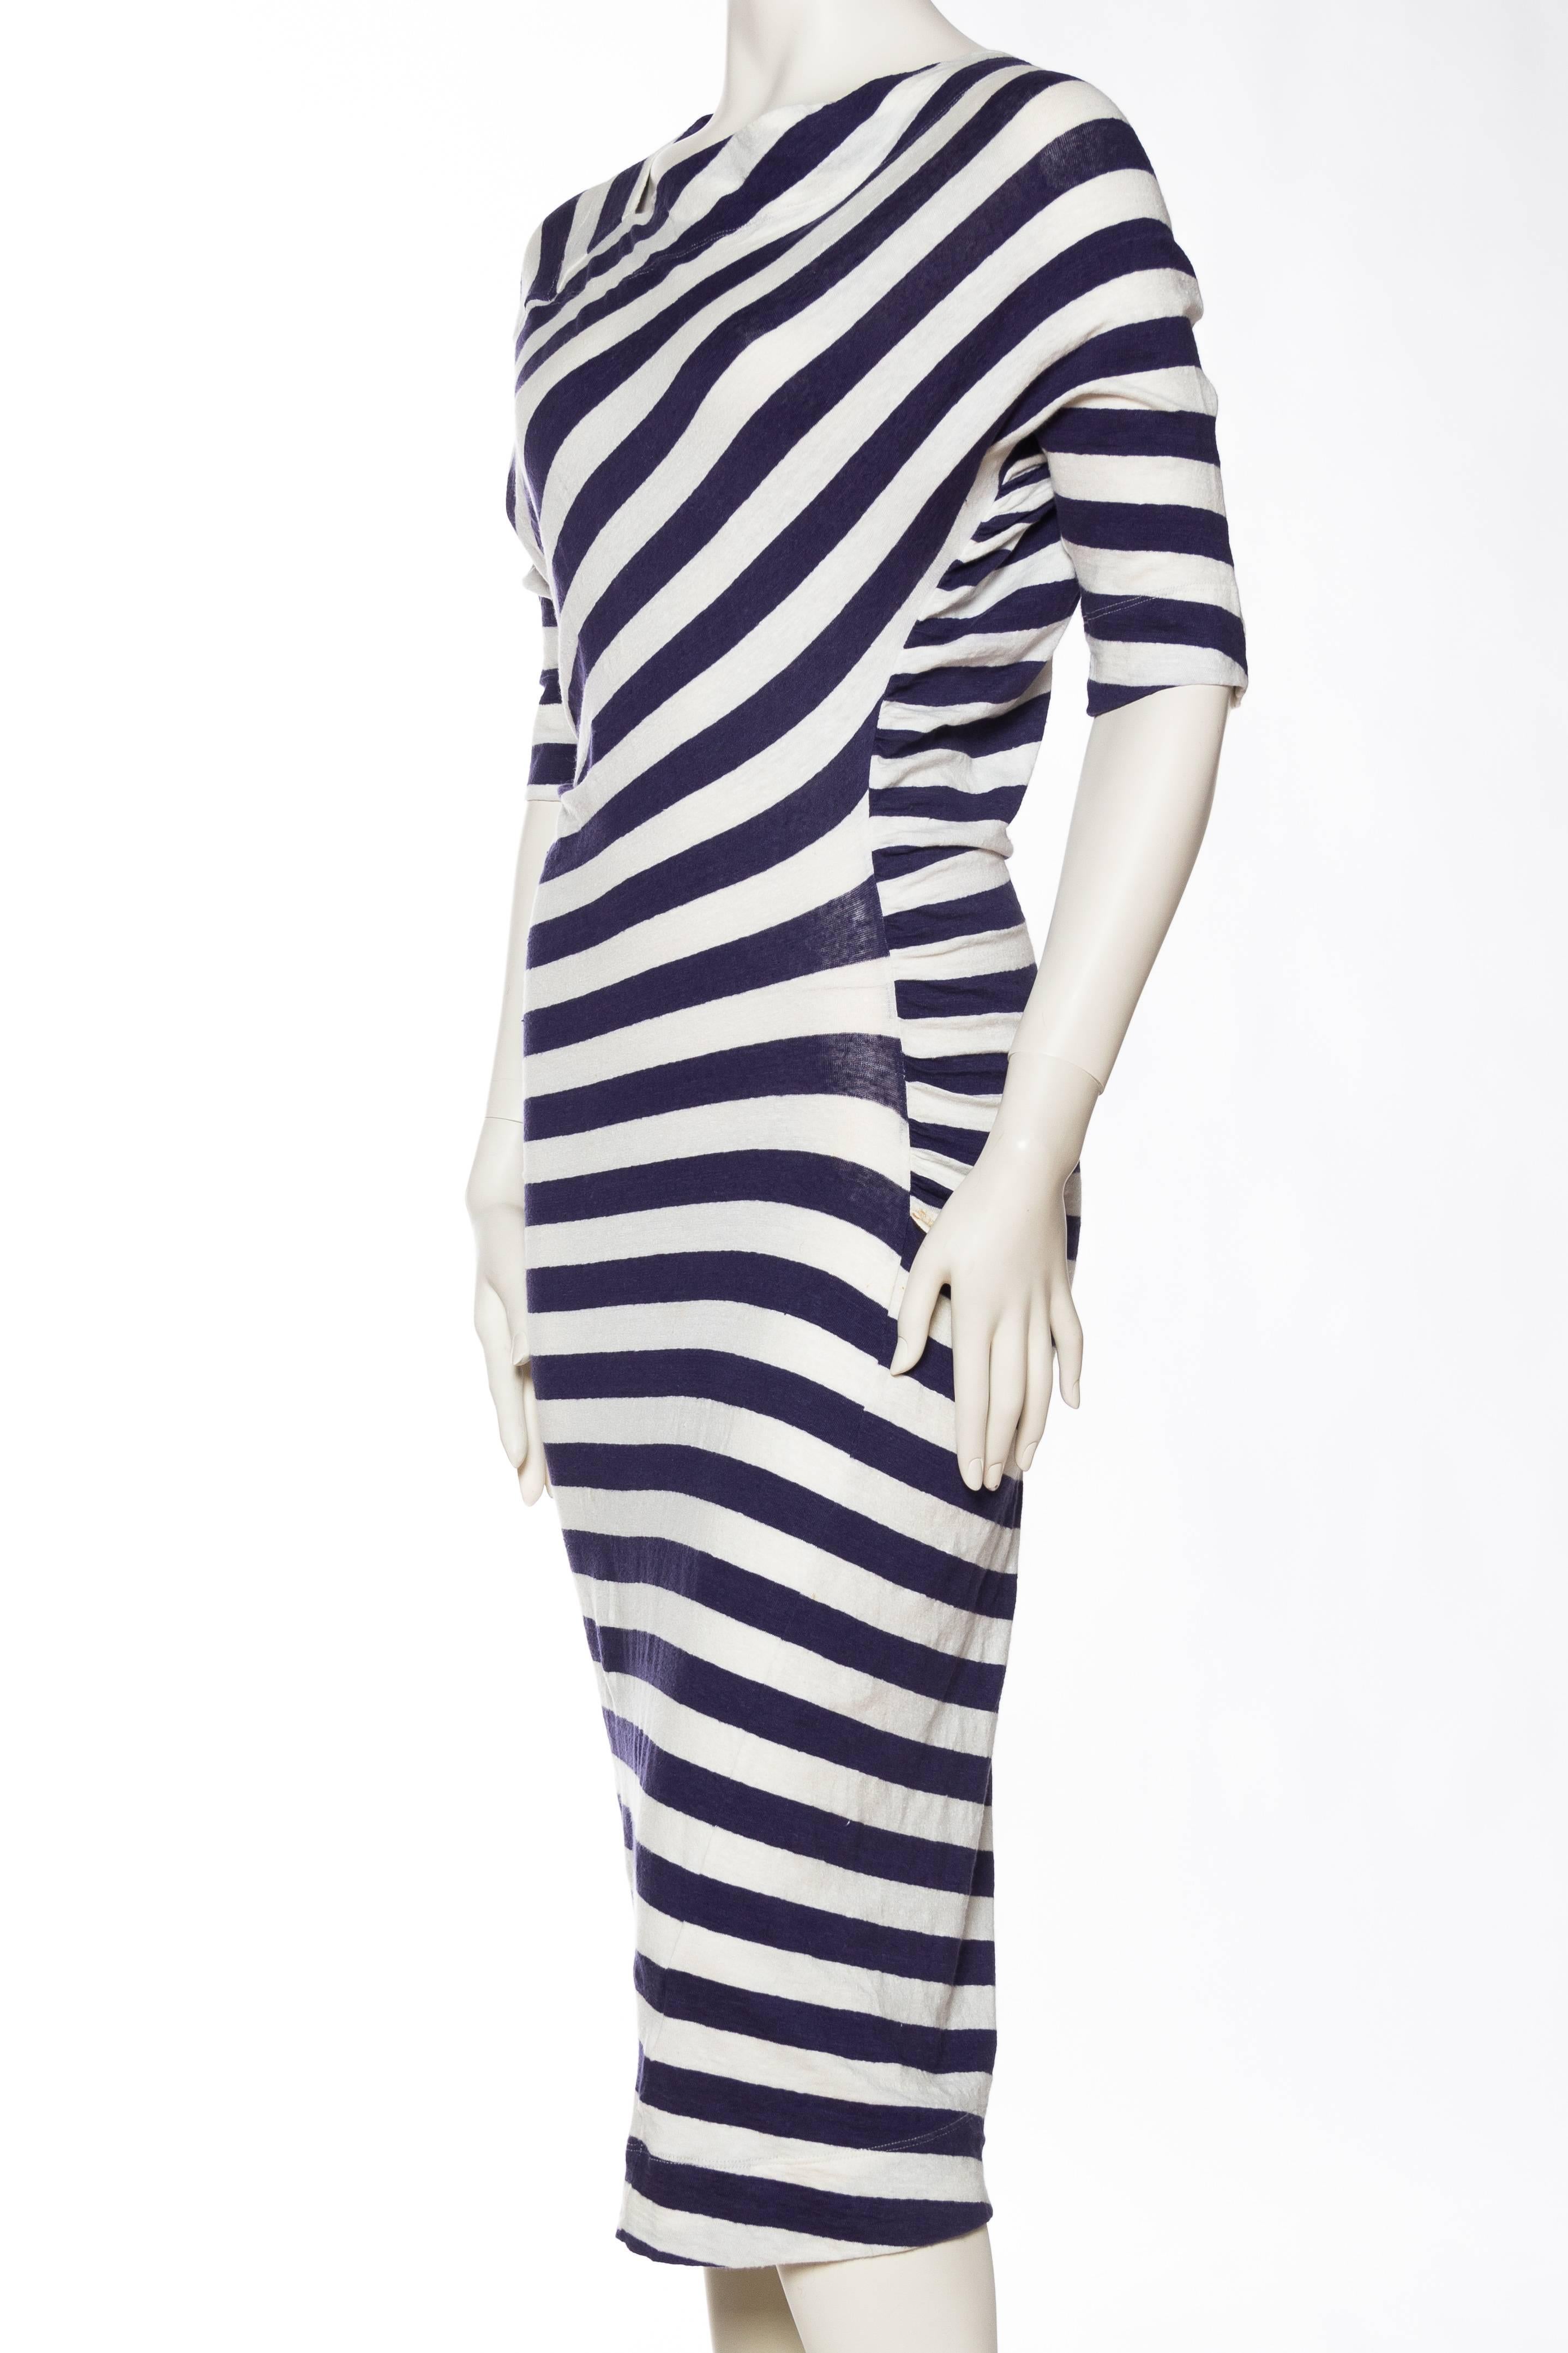 Vivienne Westwood Anglomania Linen/Cotton Knit Dress 1